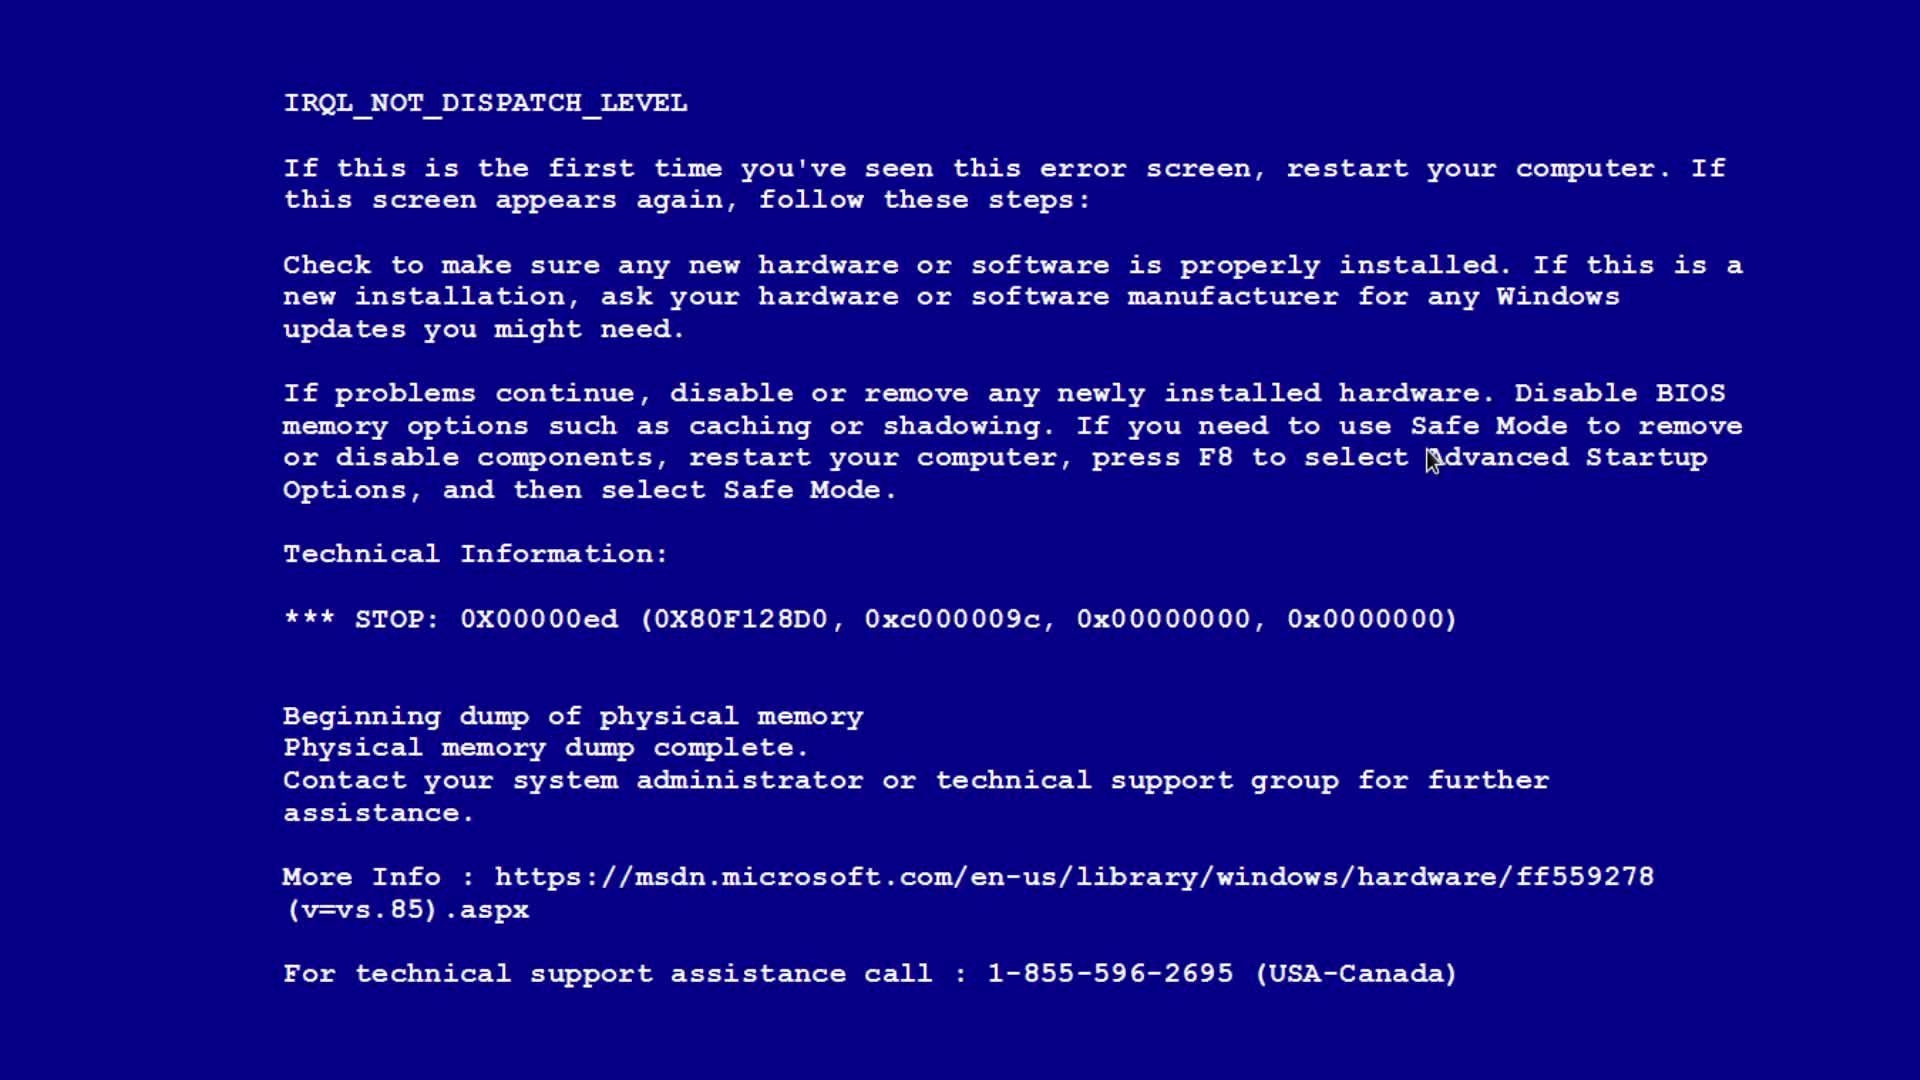 Синий экран смерти: STOP 0x000000ED Unmountable boot volume - как исправить ошибку и загрузить Windows